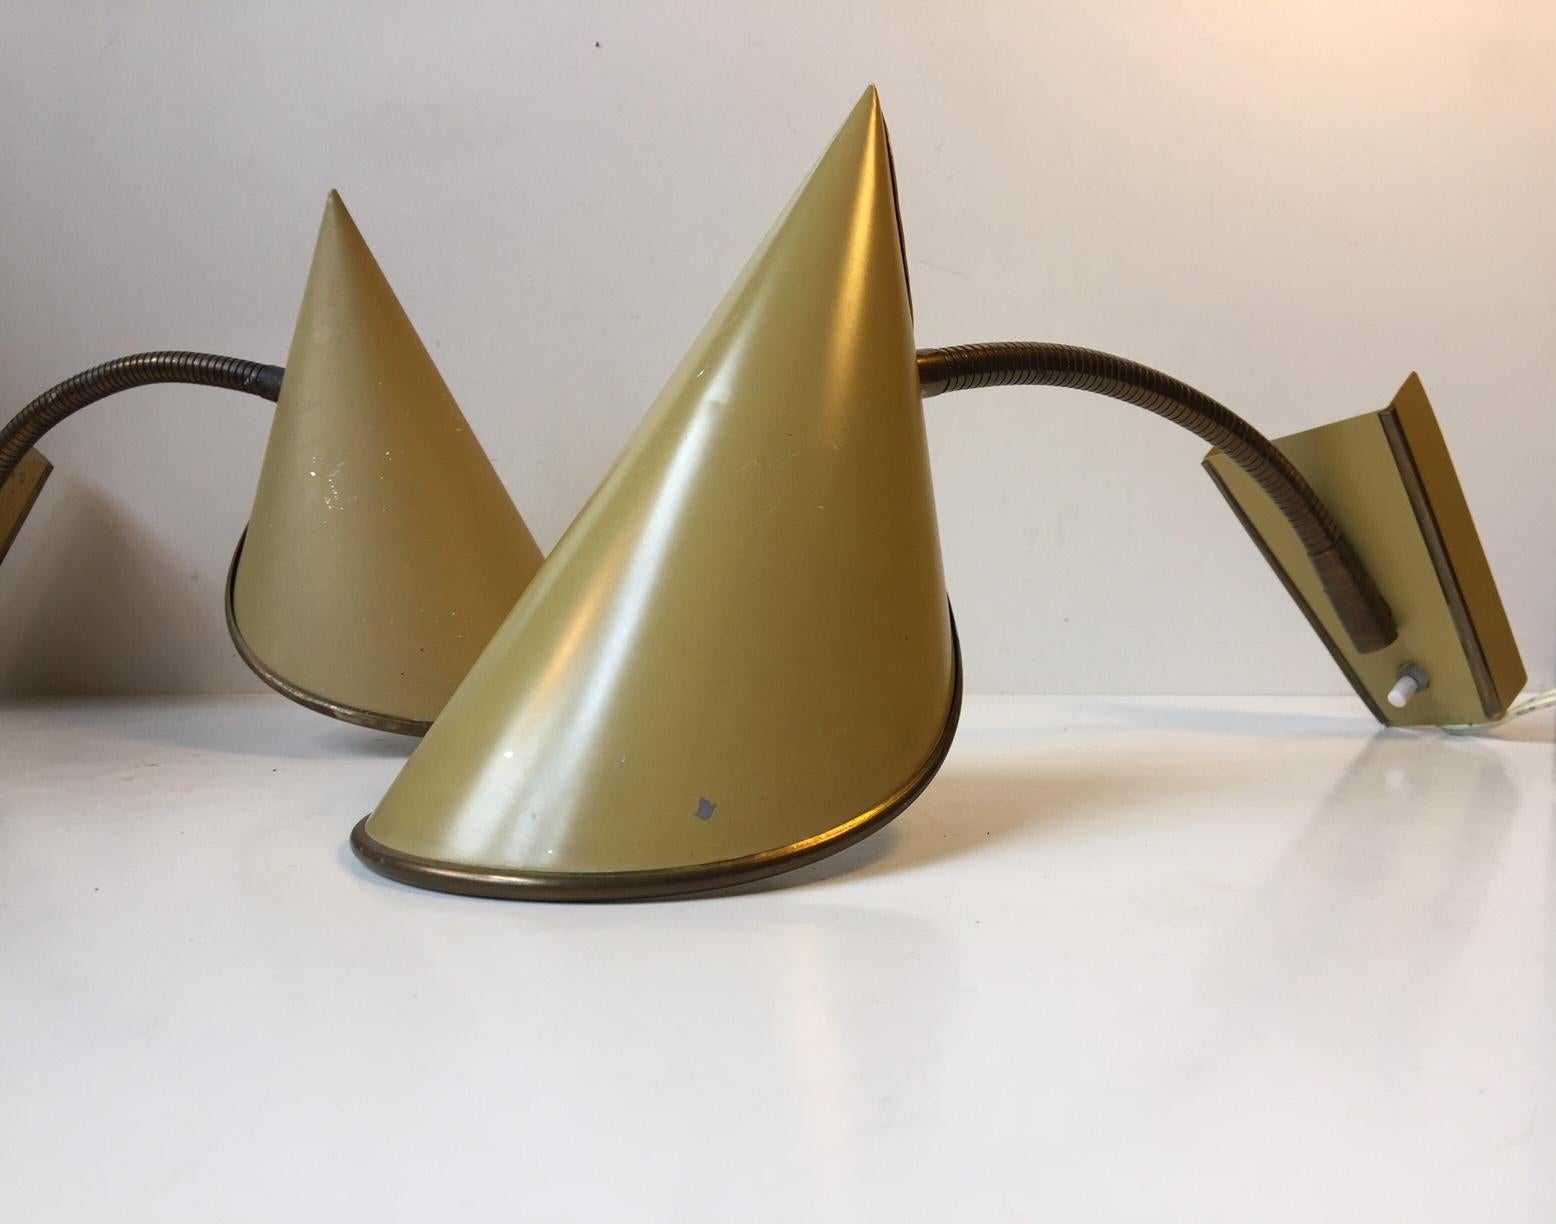 Dieses Paar verstellbarer Wandleuchten wurde in den 1950er Jahren von Fog & Mørup in Dänemark hergestellt und entworfen. Das Set besteht aus gefalteten und spitzen pastellgelben Schirmen und einem flexiblen, voll verstellbaren Schwanenhals aus